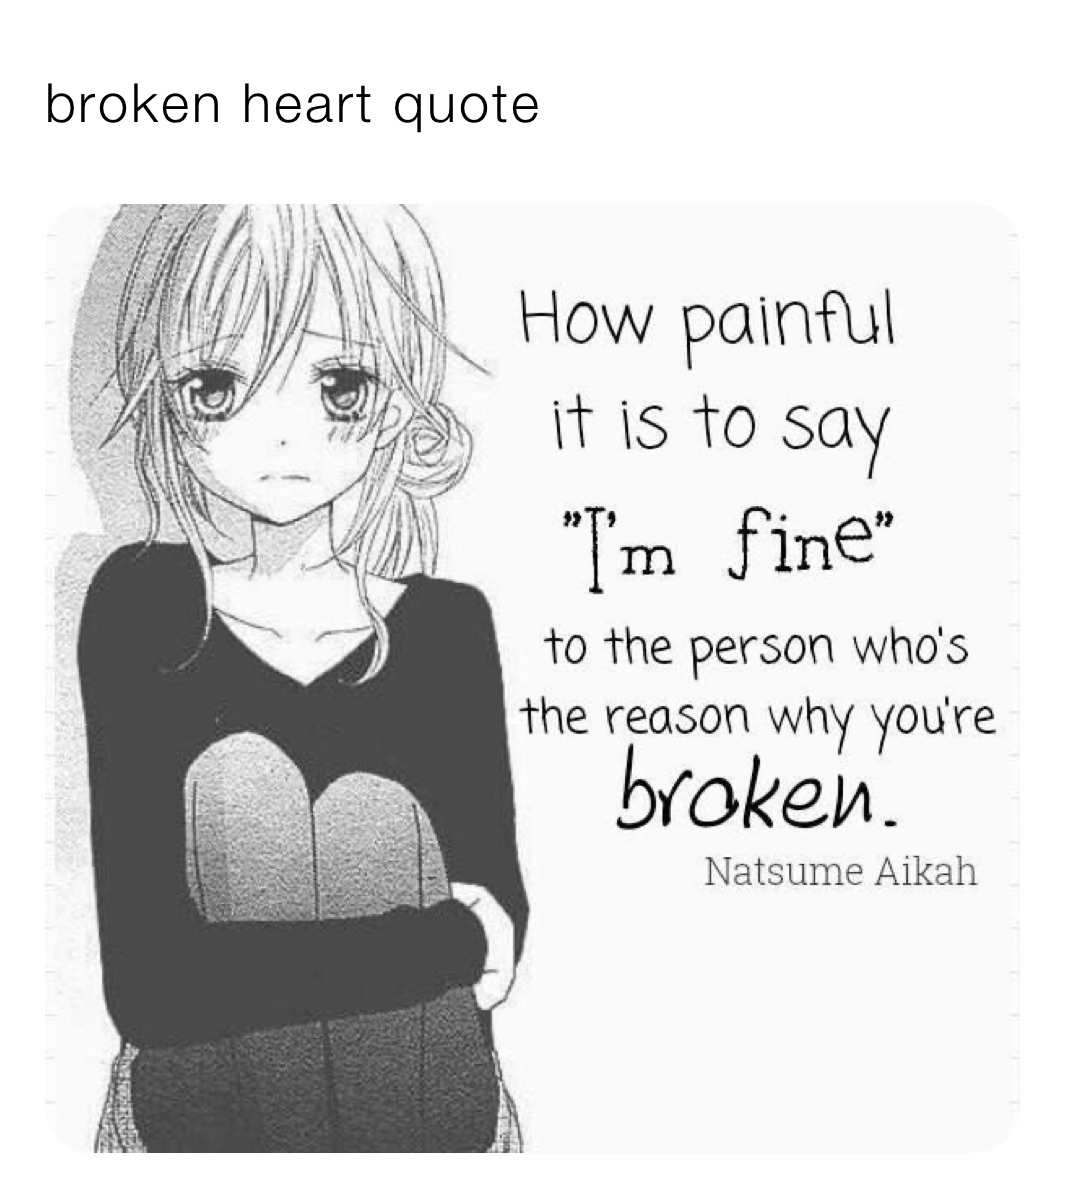 broken heart memes